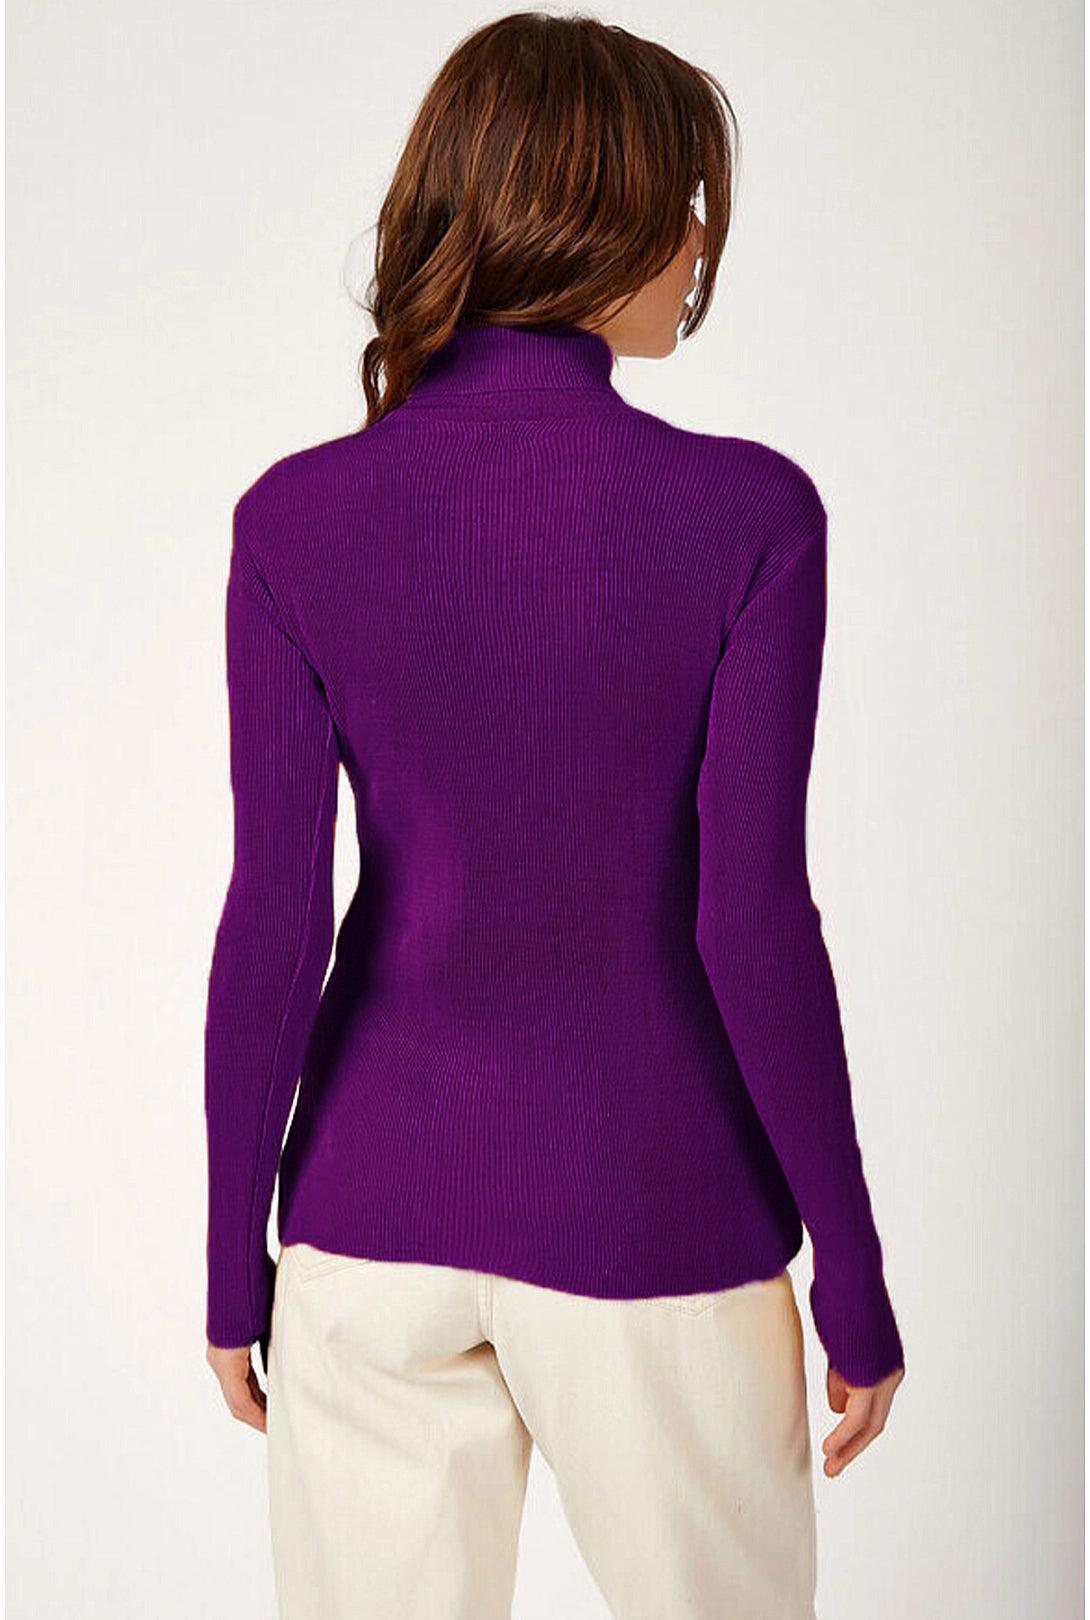 Turtleneck Knitwear Sweater Top - Purple